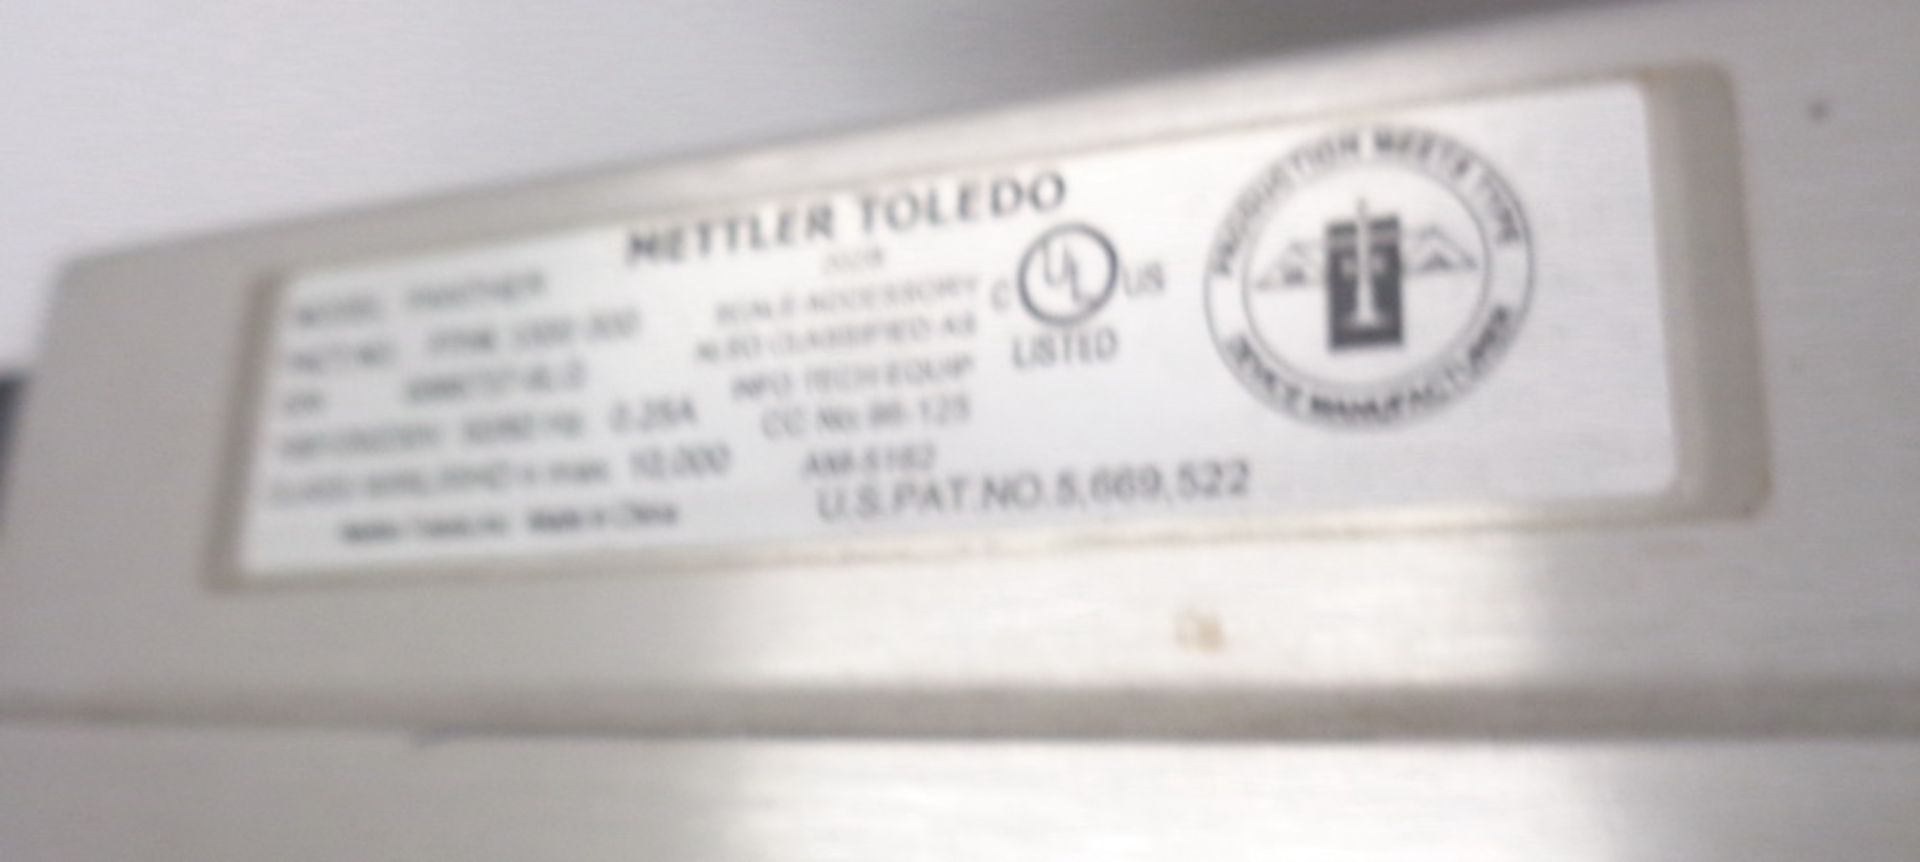 Mettler Toledo 100 kg Digital Platform Scale, Model PTHK - Image 4 of 4